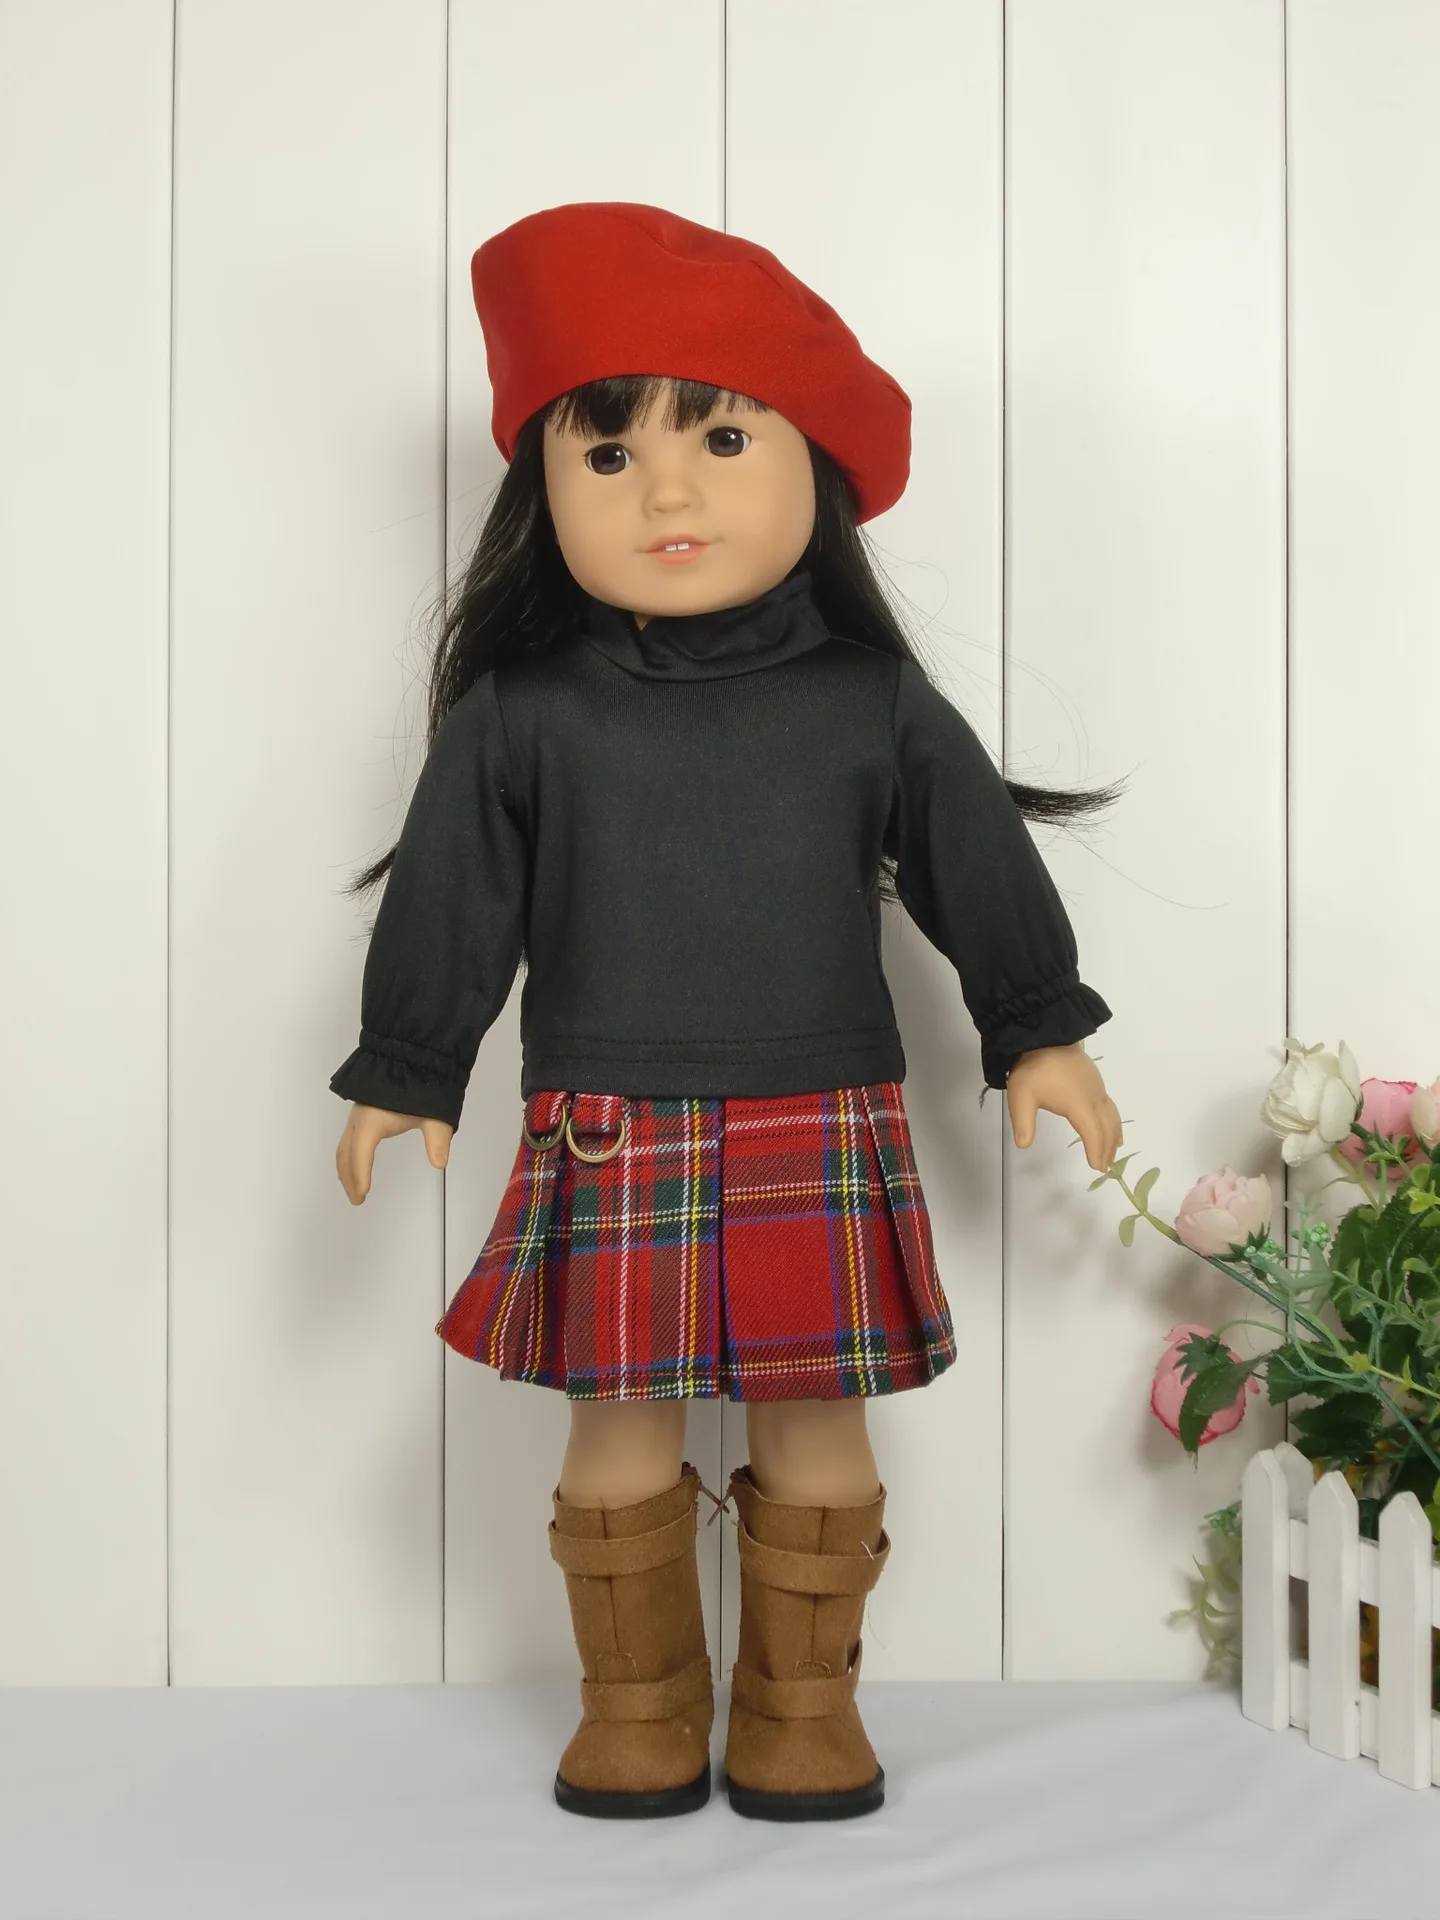 3 шт./компл. 1hat + 1 футболка + 1 платье шотландское платье костюм для 18-дюймовой американской девушки куклы 45 см кукла аксессуары